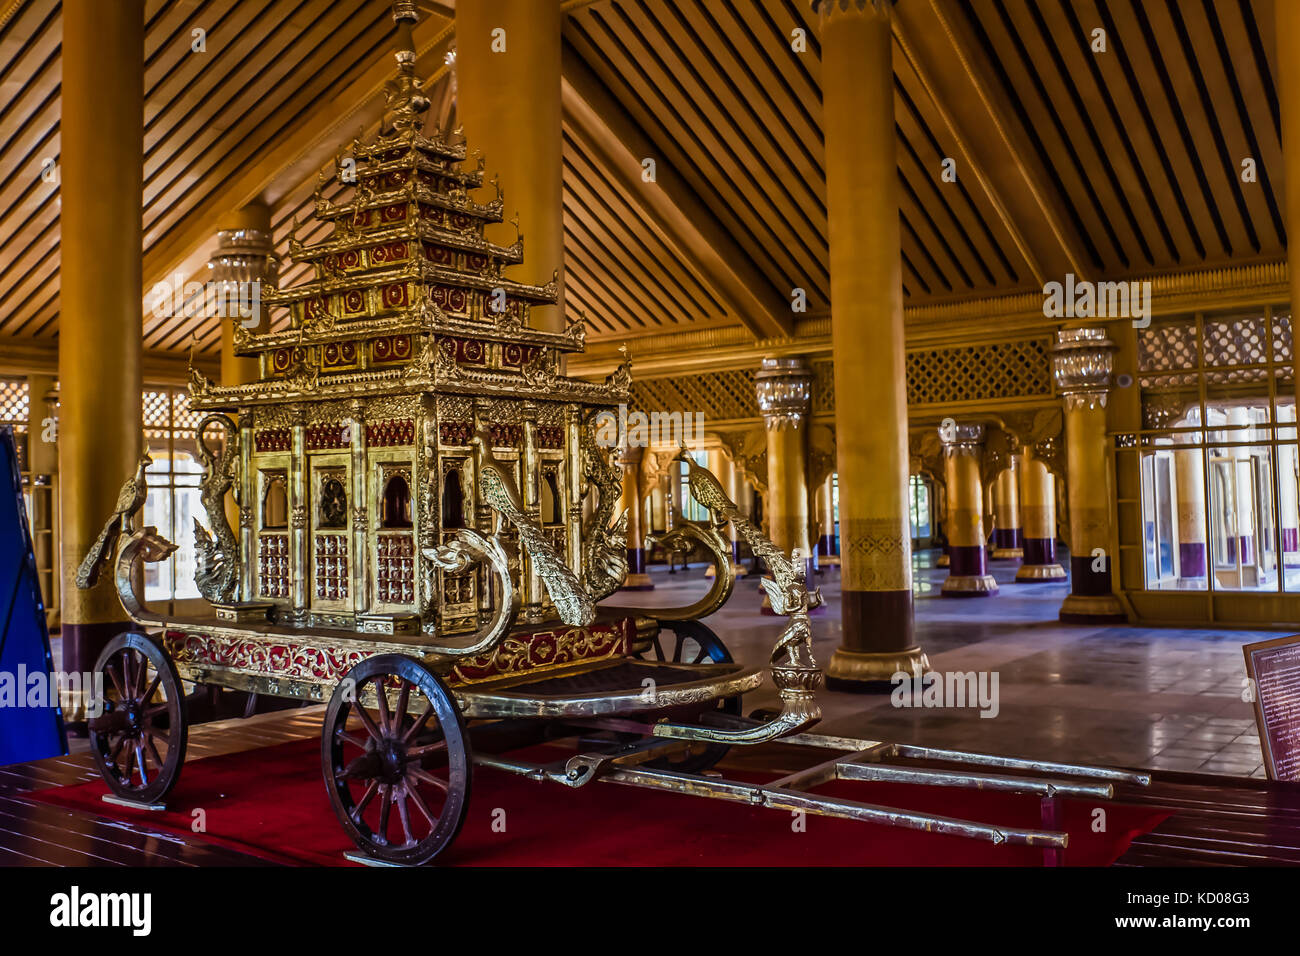 The Great Audience Hall and Royal Coach at the Kanbawzathadi Palace, Bago, Myanmar Stock Photo